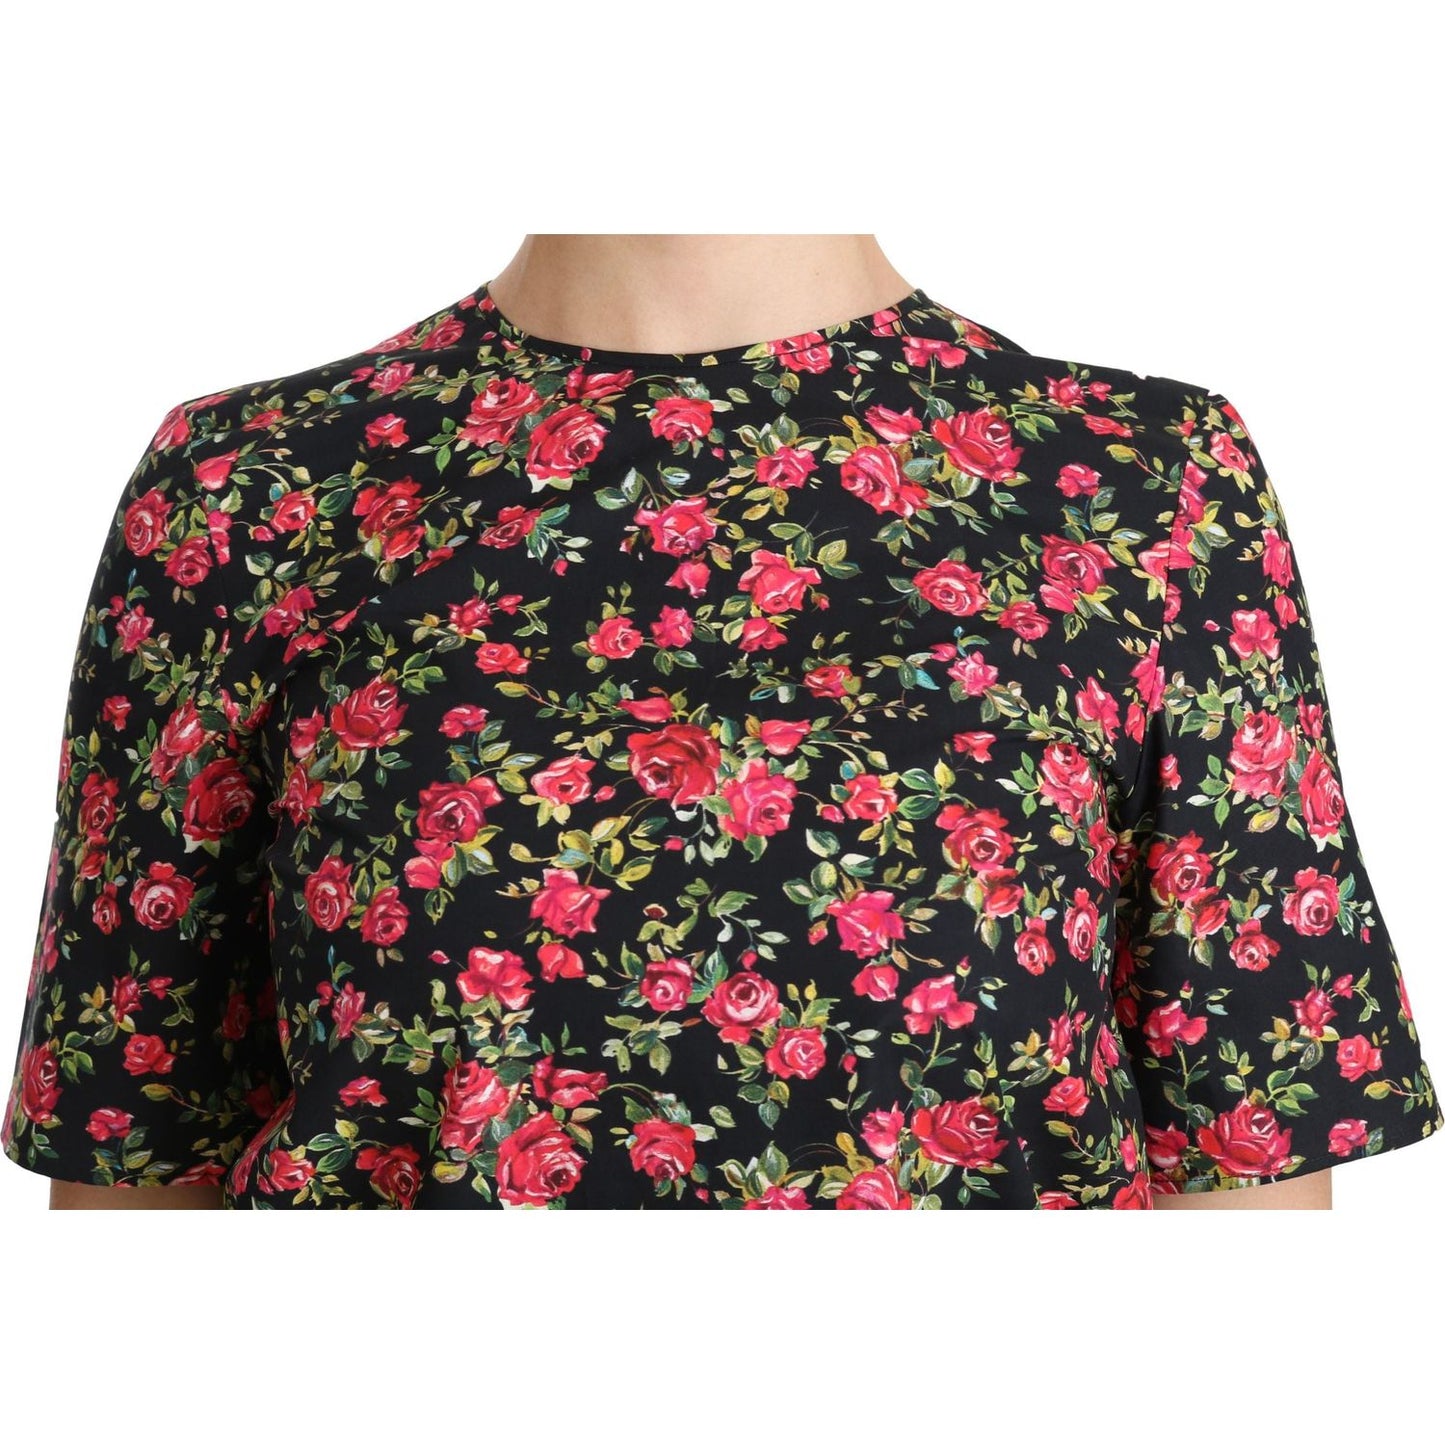 Dolce & Gabbana Elegant Black Floral Crew Neck Top black-floral-roses-short-sleeve-top-blouse